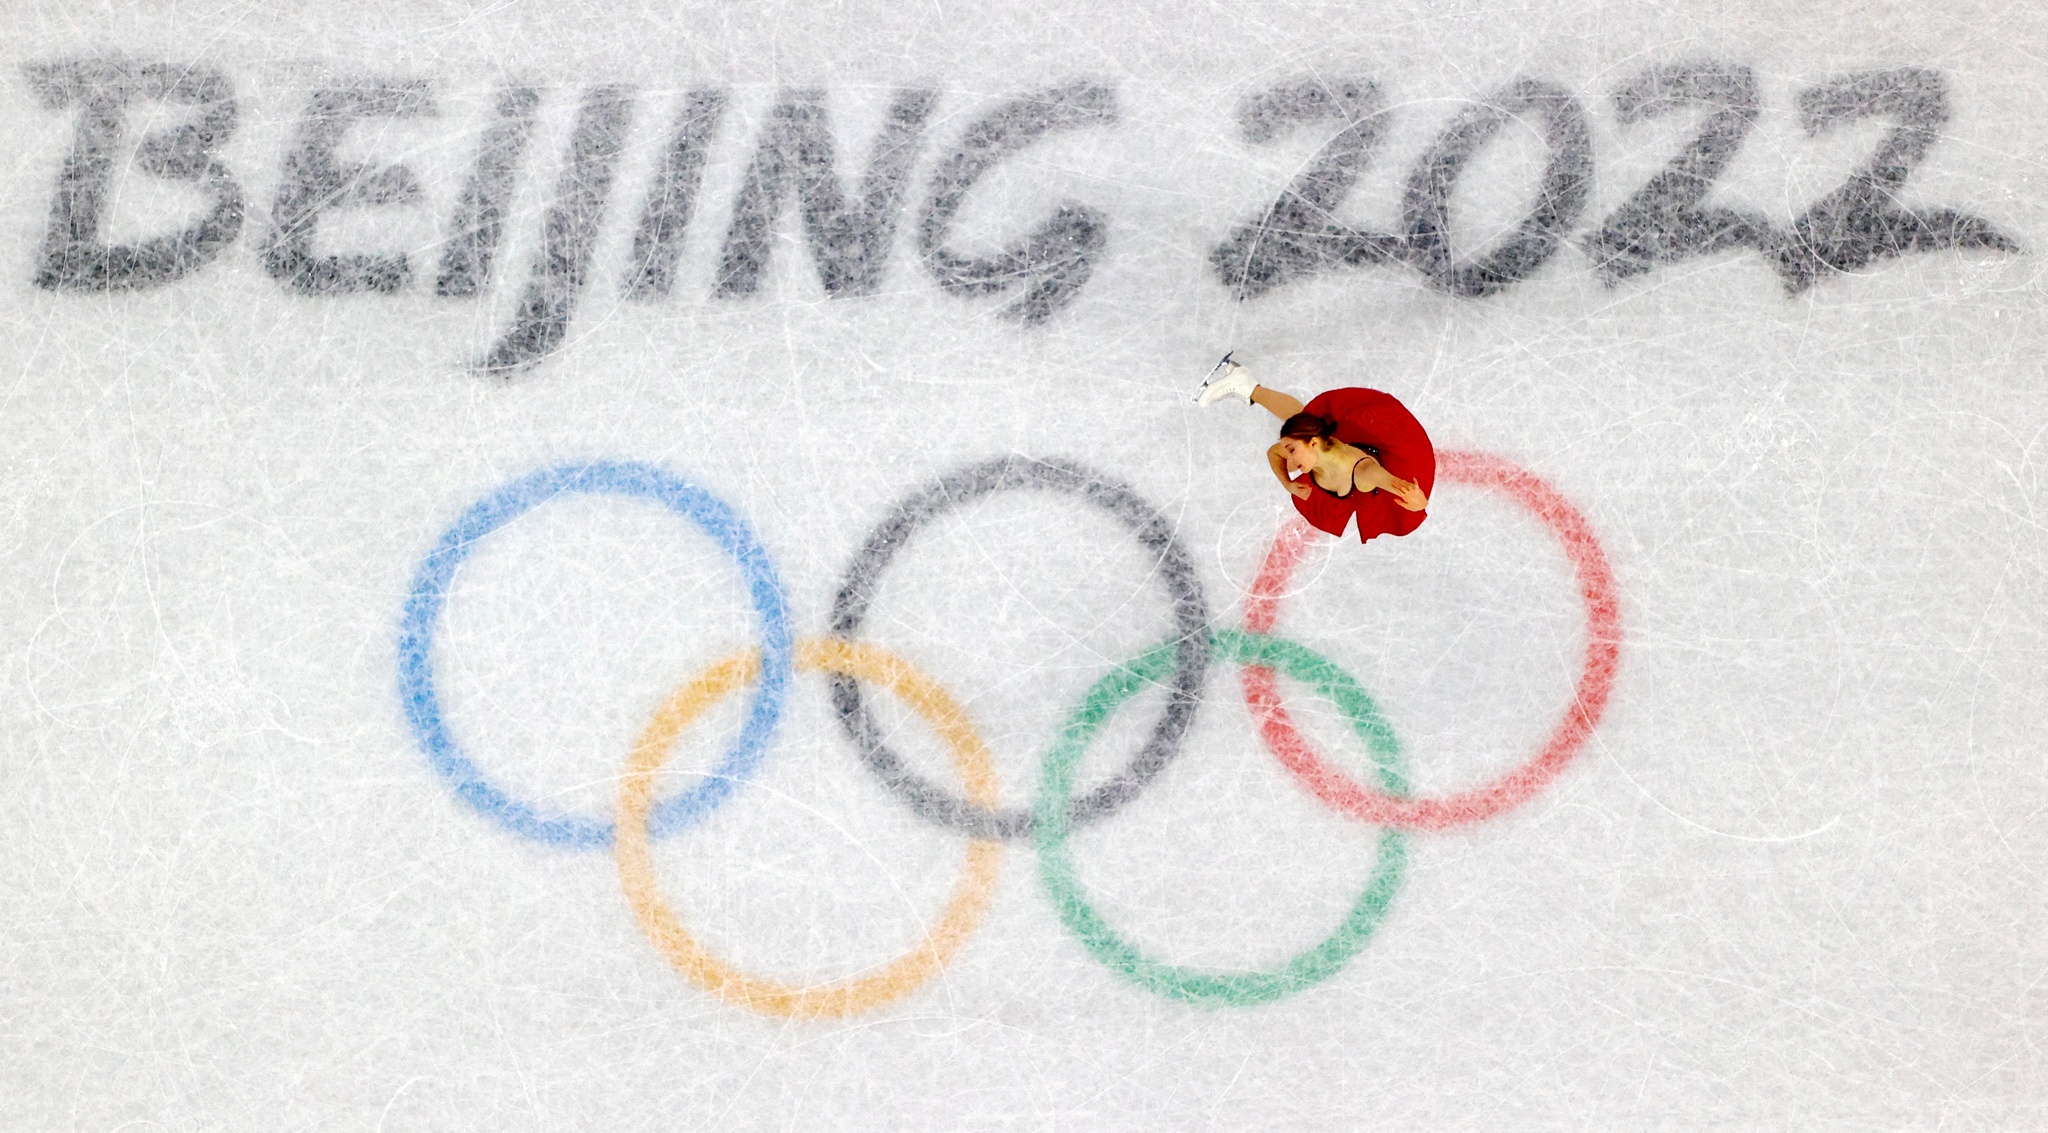 Noruega é 'campeão' dos Jogos Olímpicos de Inverno com recorde de medalhas  - Mais modalidades - SAPO Desporto